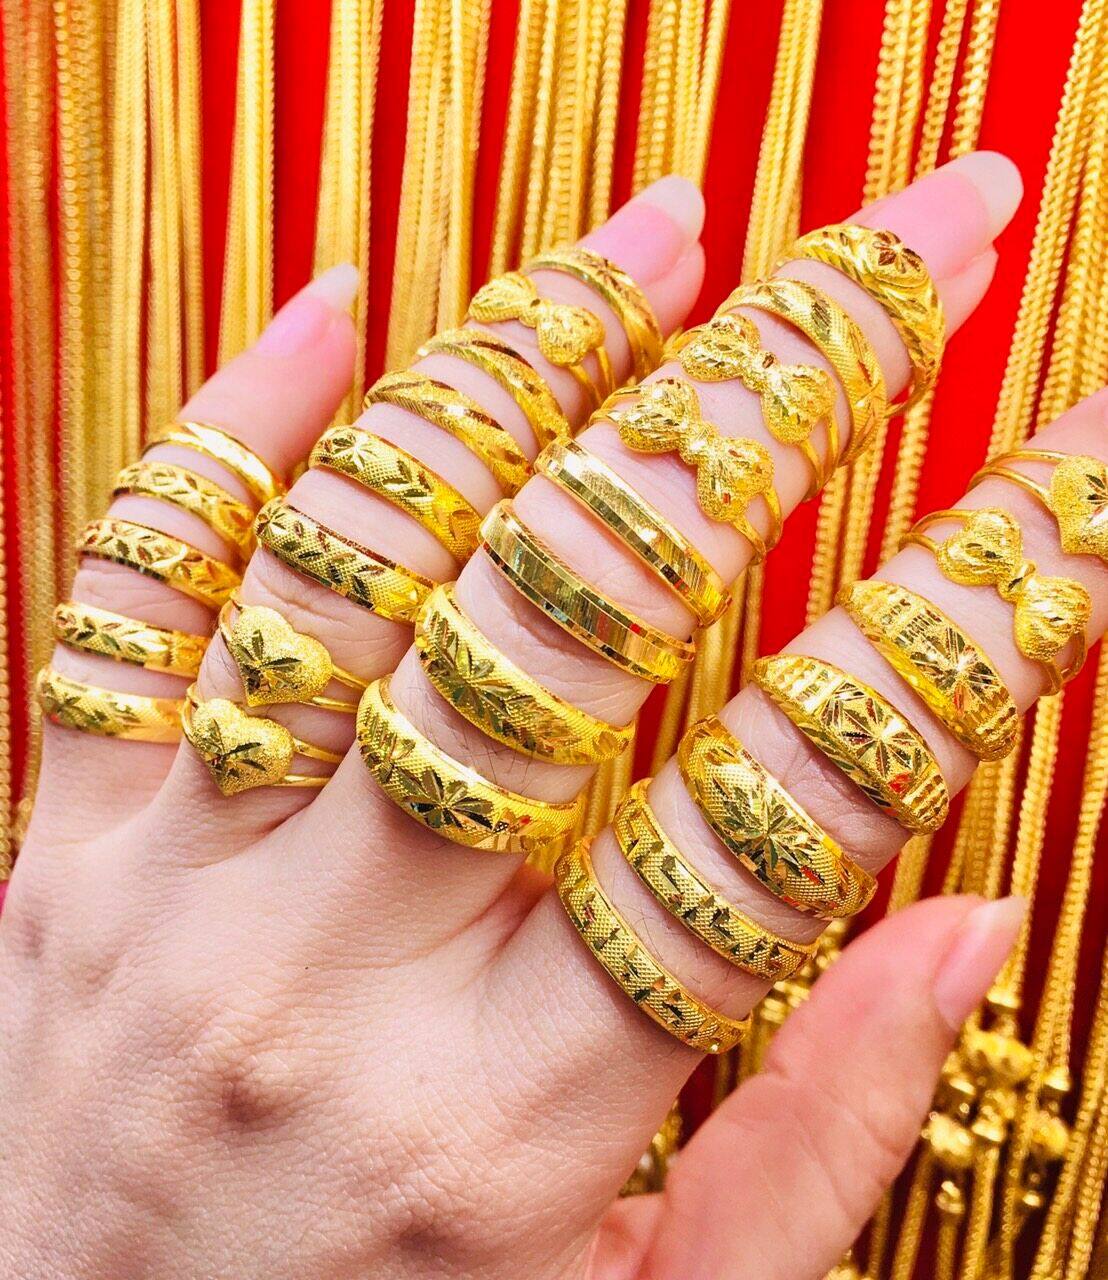 แหวนทองคำแท้ น้ำหนัก 1 กรัม ทางร้านจัดสุ่ม ลายสวยๆให้จร้า เลือกSIze ได้อย่างเดียวค่ะ